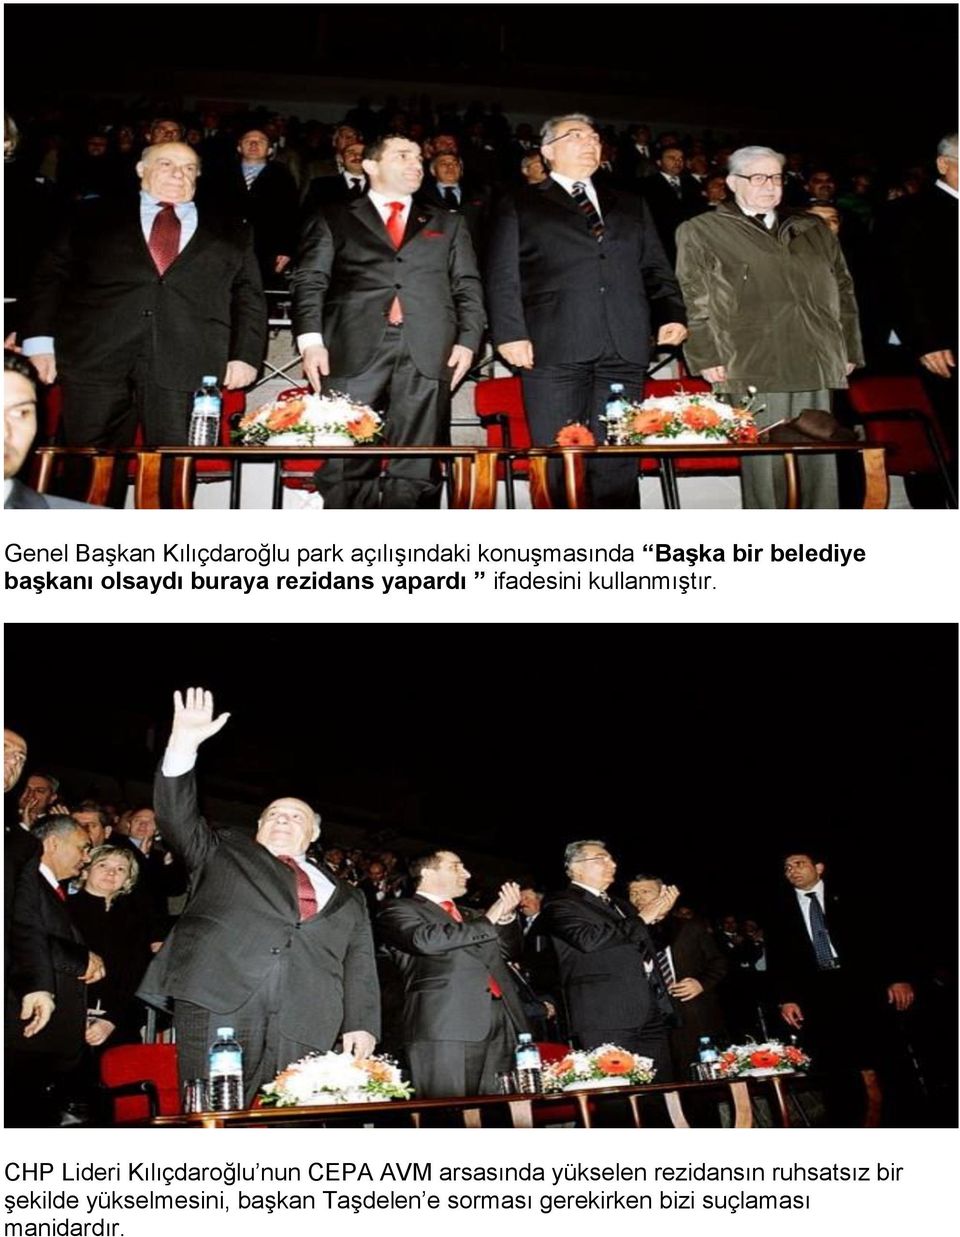 CHP Lideri Kılıçdaroğlu nun CEPA AVM arsasında yükselen rezidansın ruhsatsız